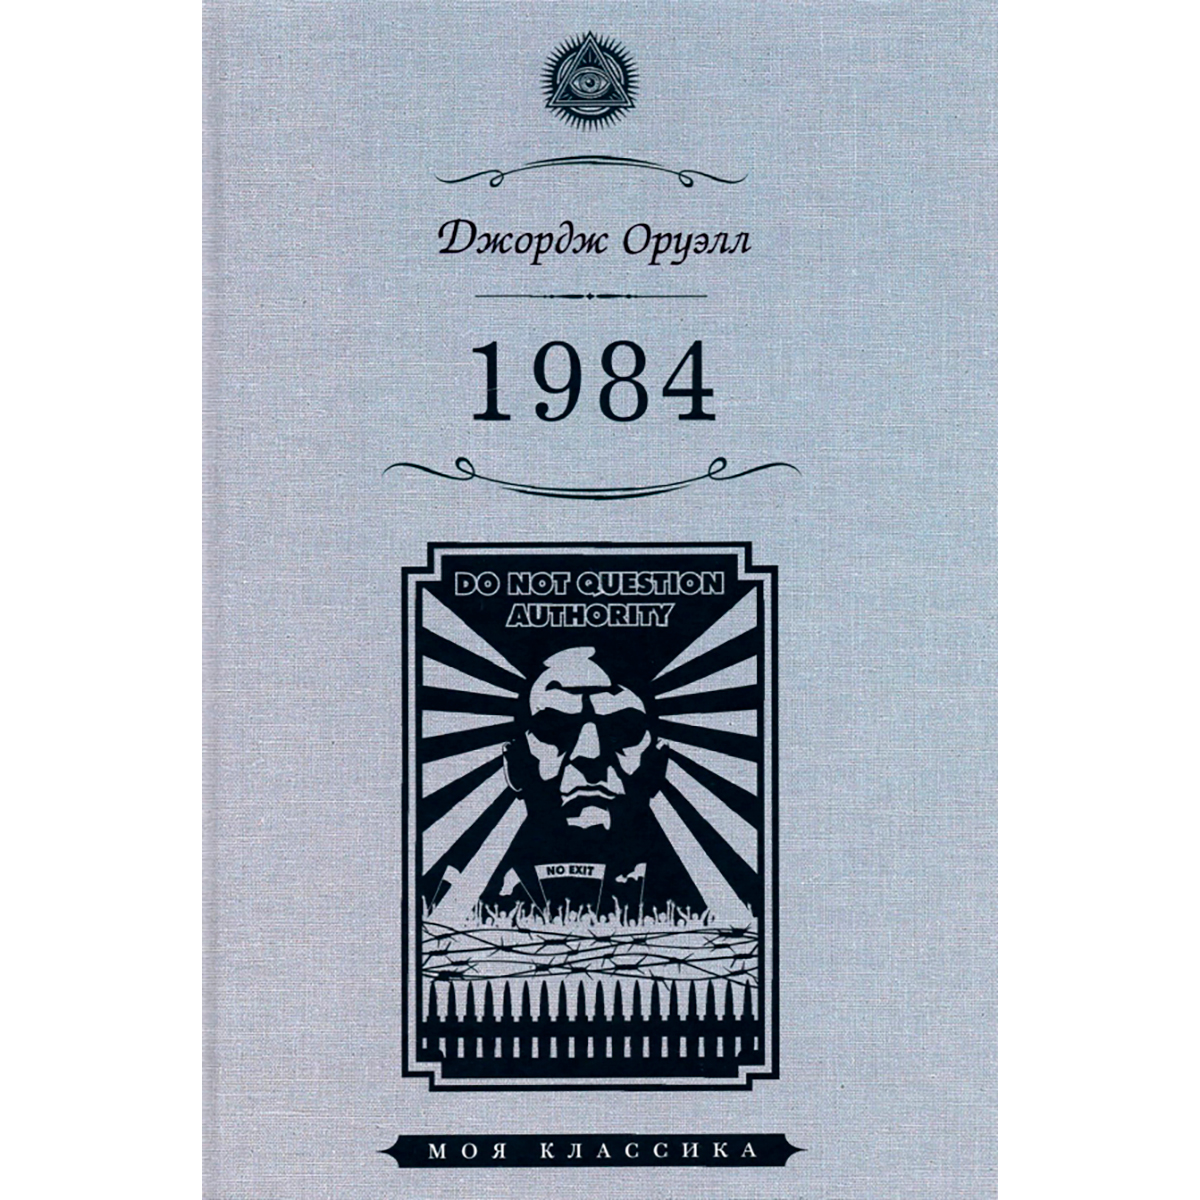 Оруэлл книги отзывы. 1984 Джордж Оруэлл book. 1984 Джордж Оруэлл Лондон. Оруэлл 1984 обложка.